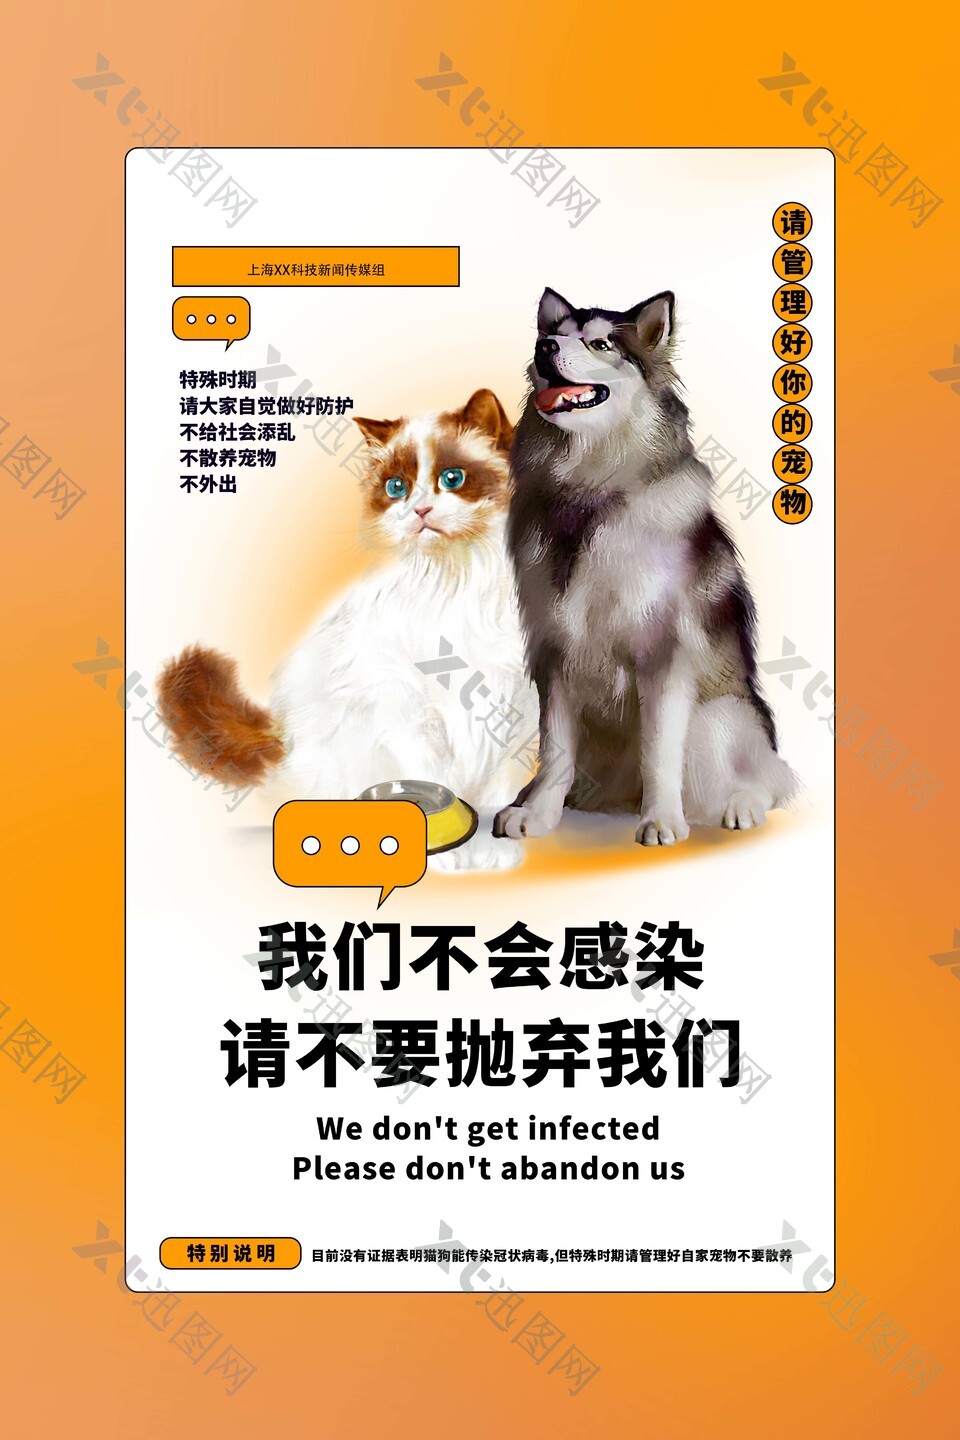 请勿抛弃宠物公益宣传海报图片大全